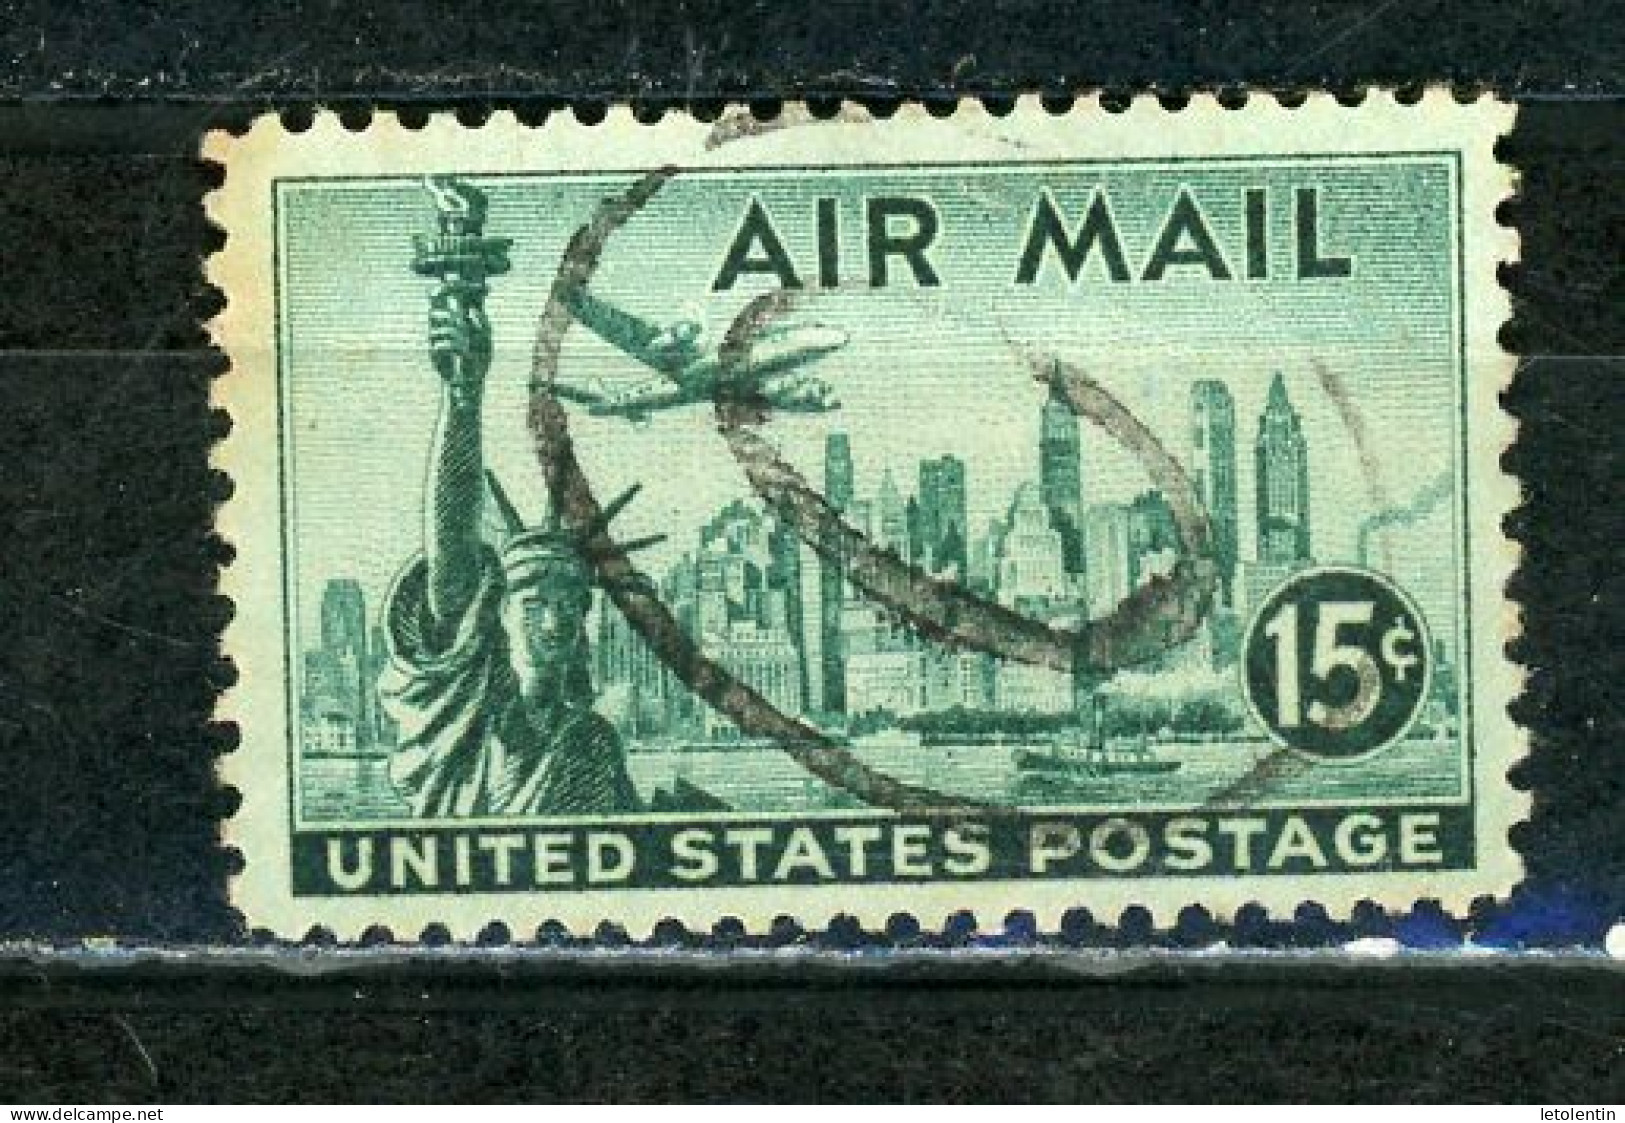 USA : POSTE AÉRIENNE - N° Yvert 37 Obli. - 2a. 1941-1960 Usados